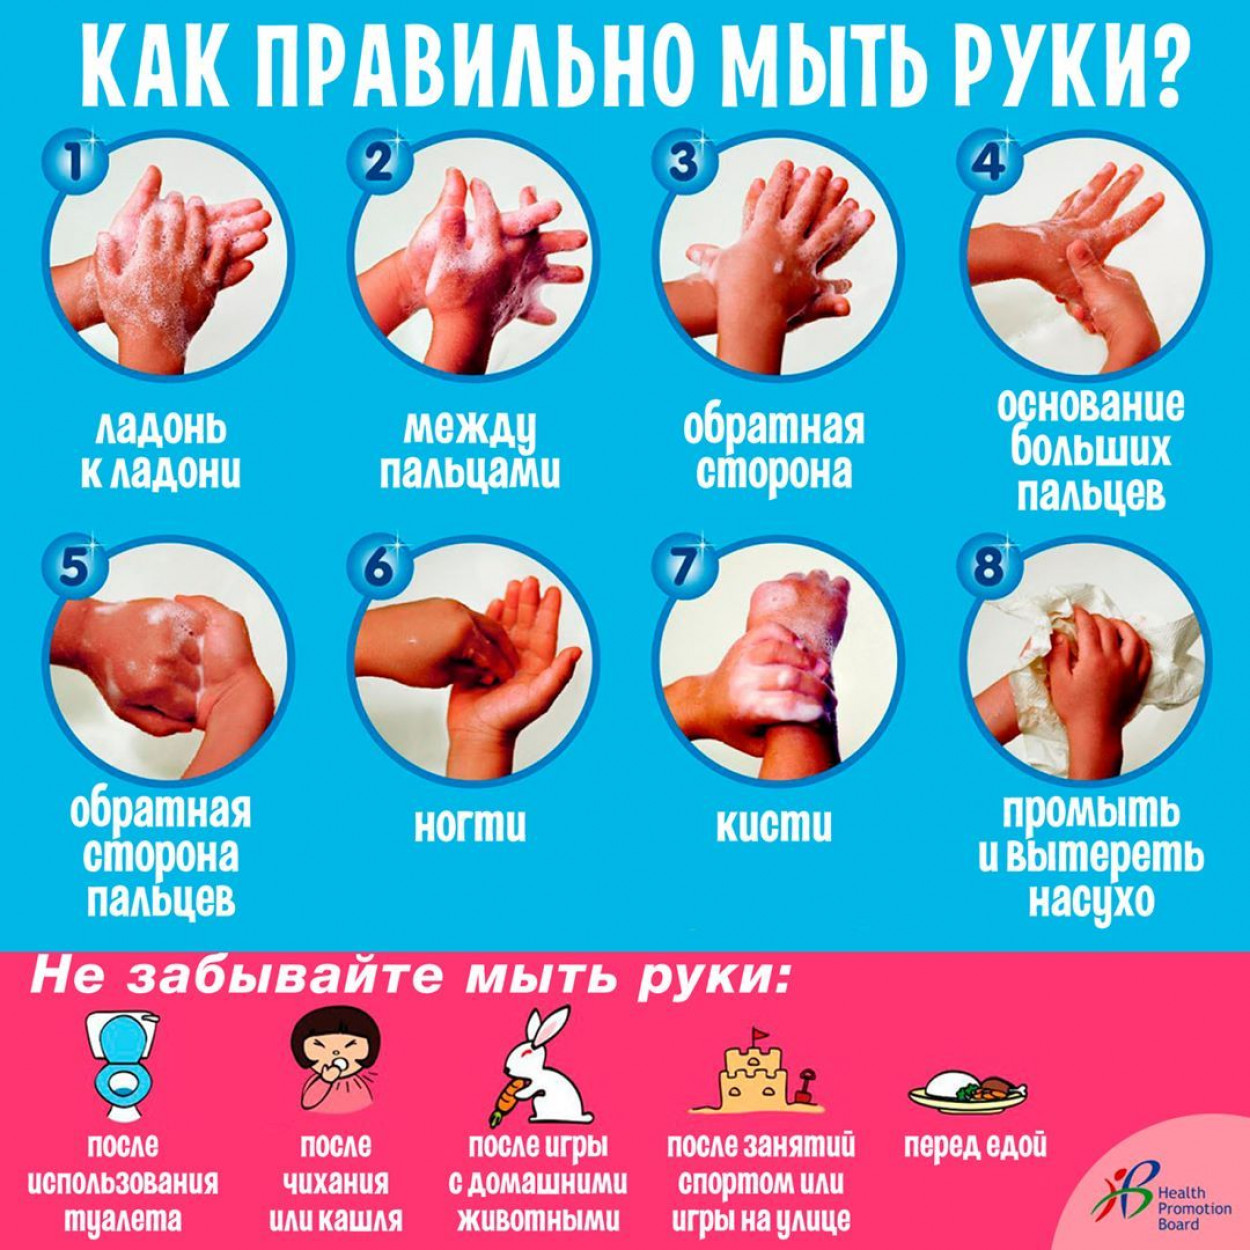 Температура при мытье рук должна быть. Правильно мыть руки. Как правильн Оымт ьруки. КККМ правильн омыть руки. Памятка как правильно мыть руки.